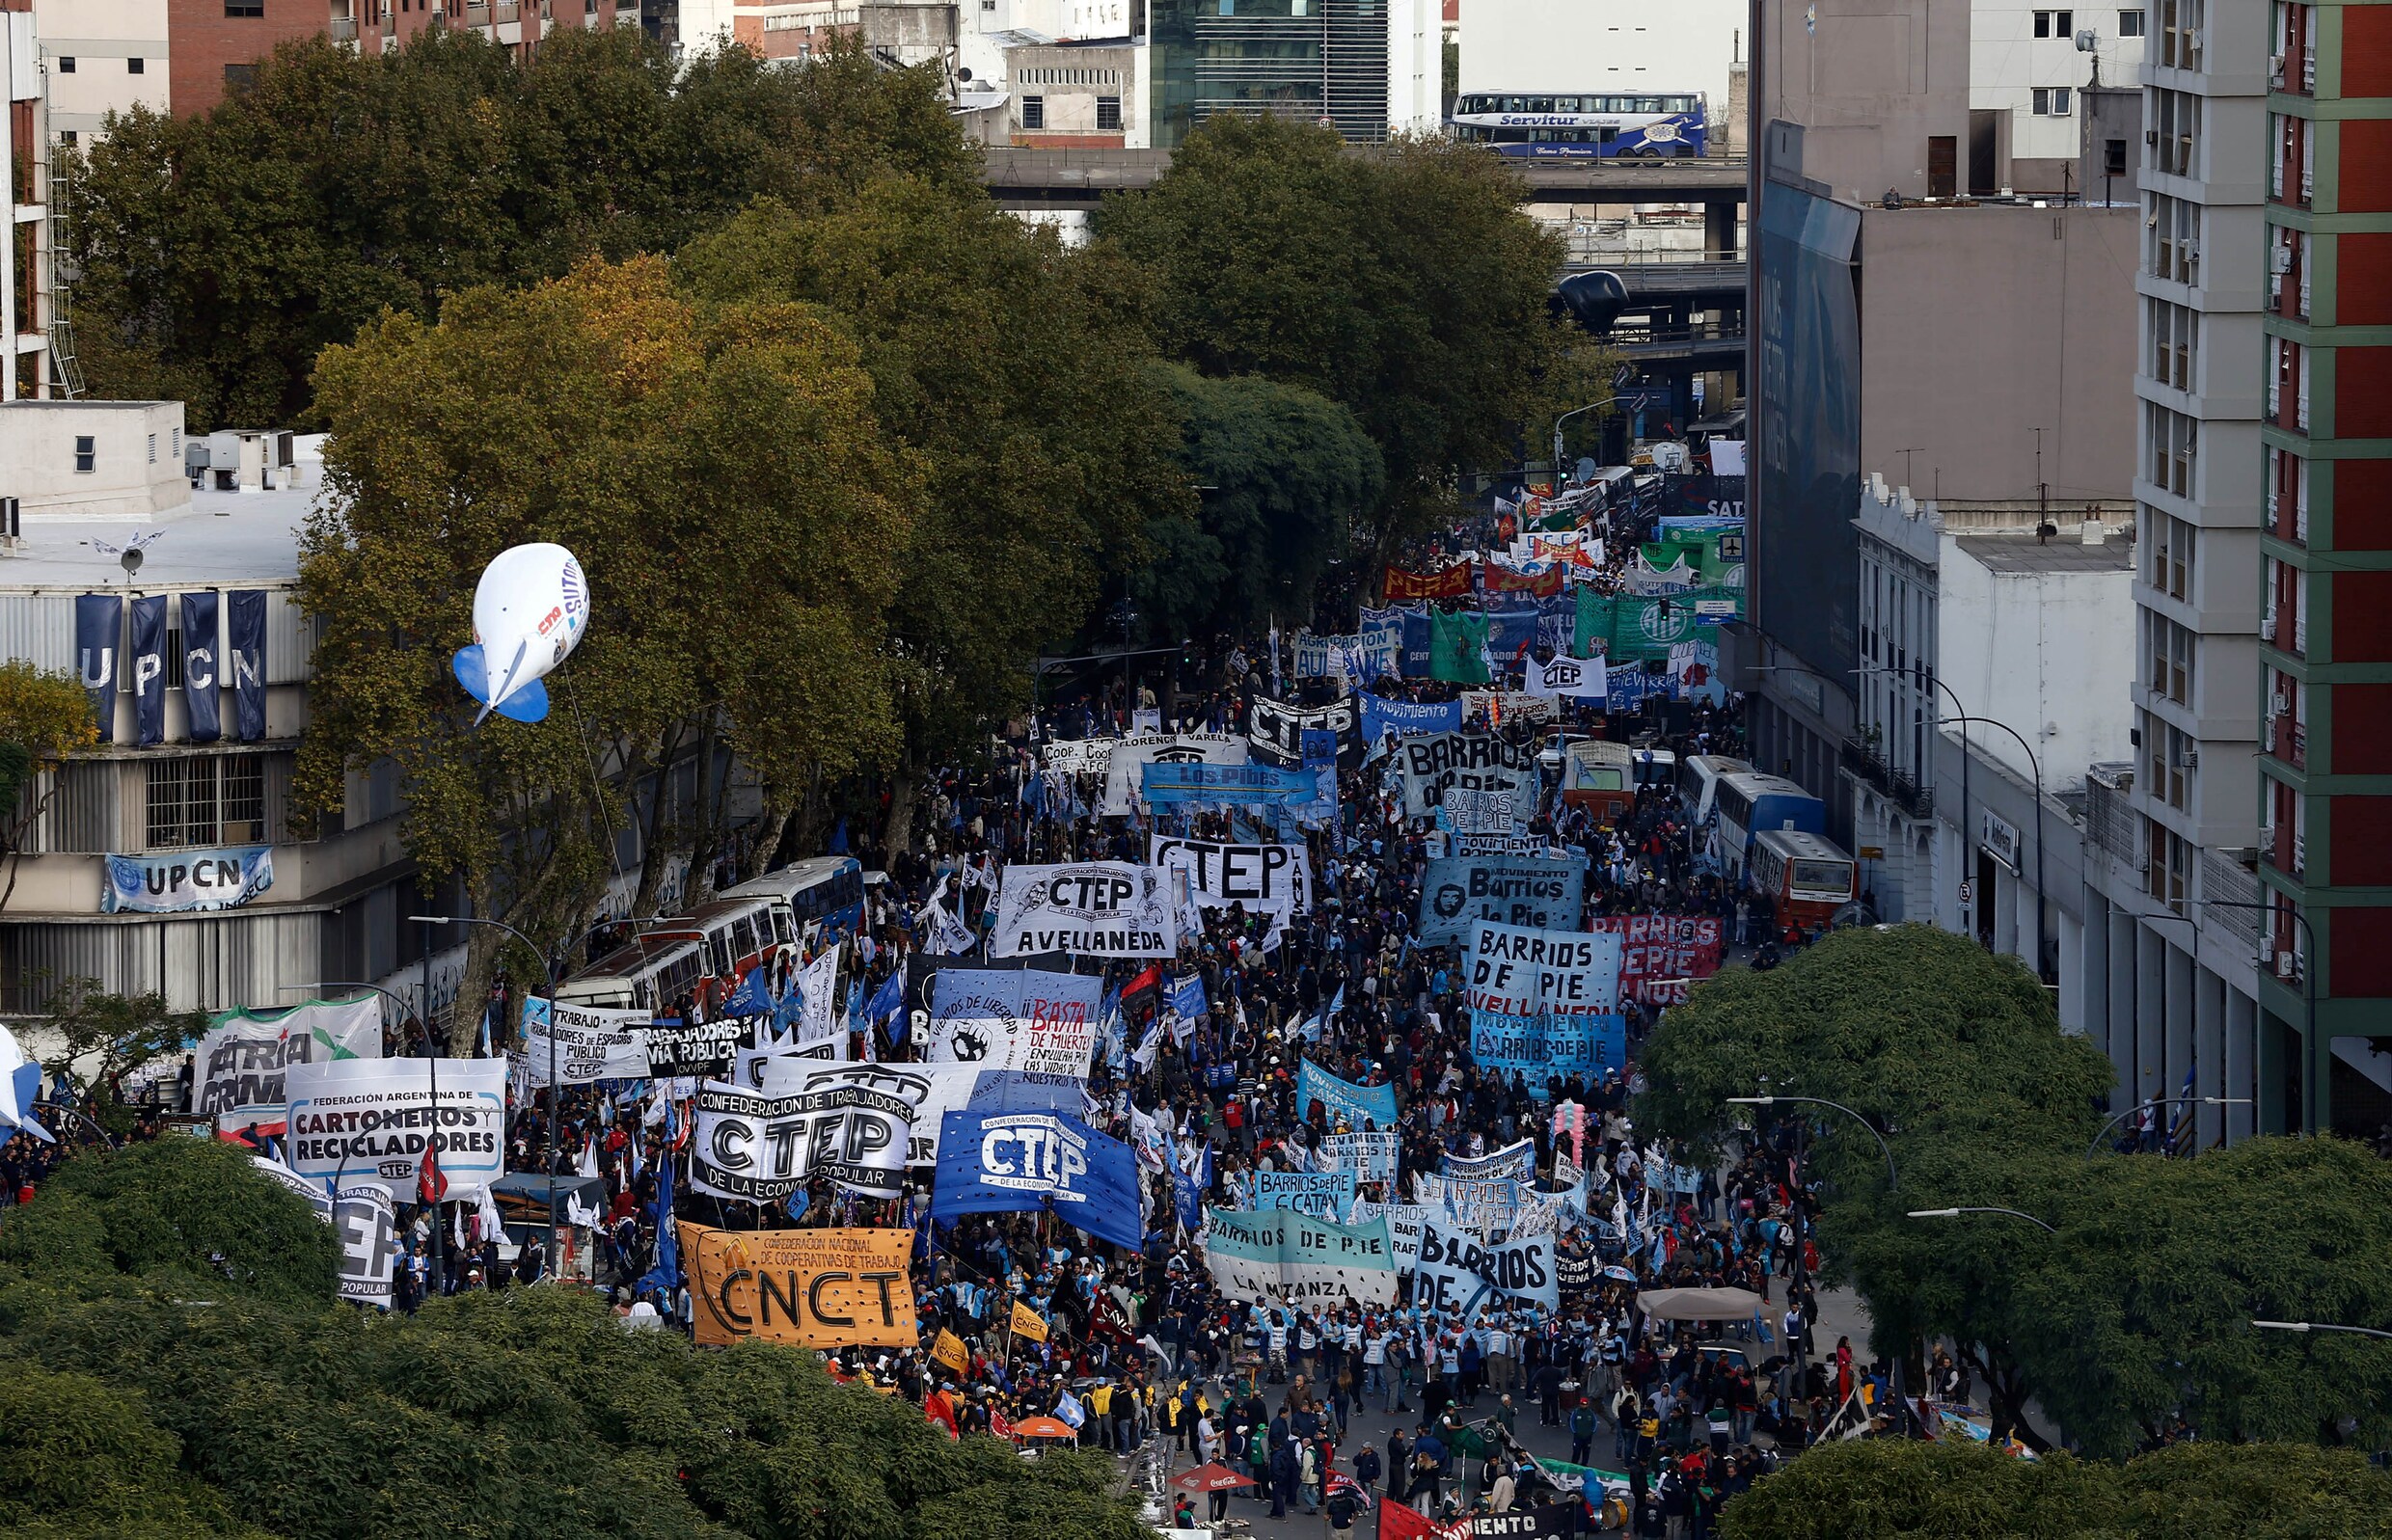 Argentijnen massaal op straat tegen ontslagen en inflatie